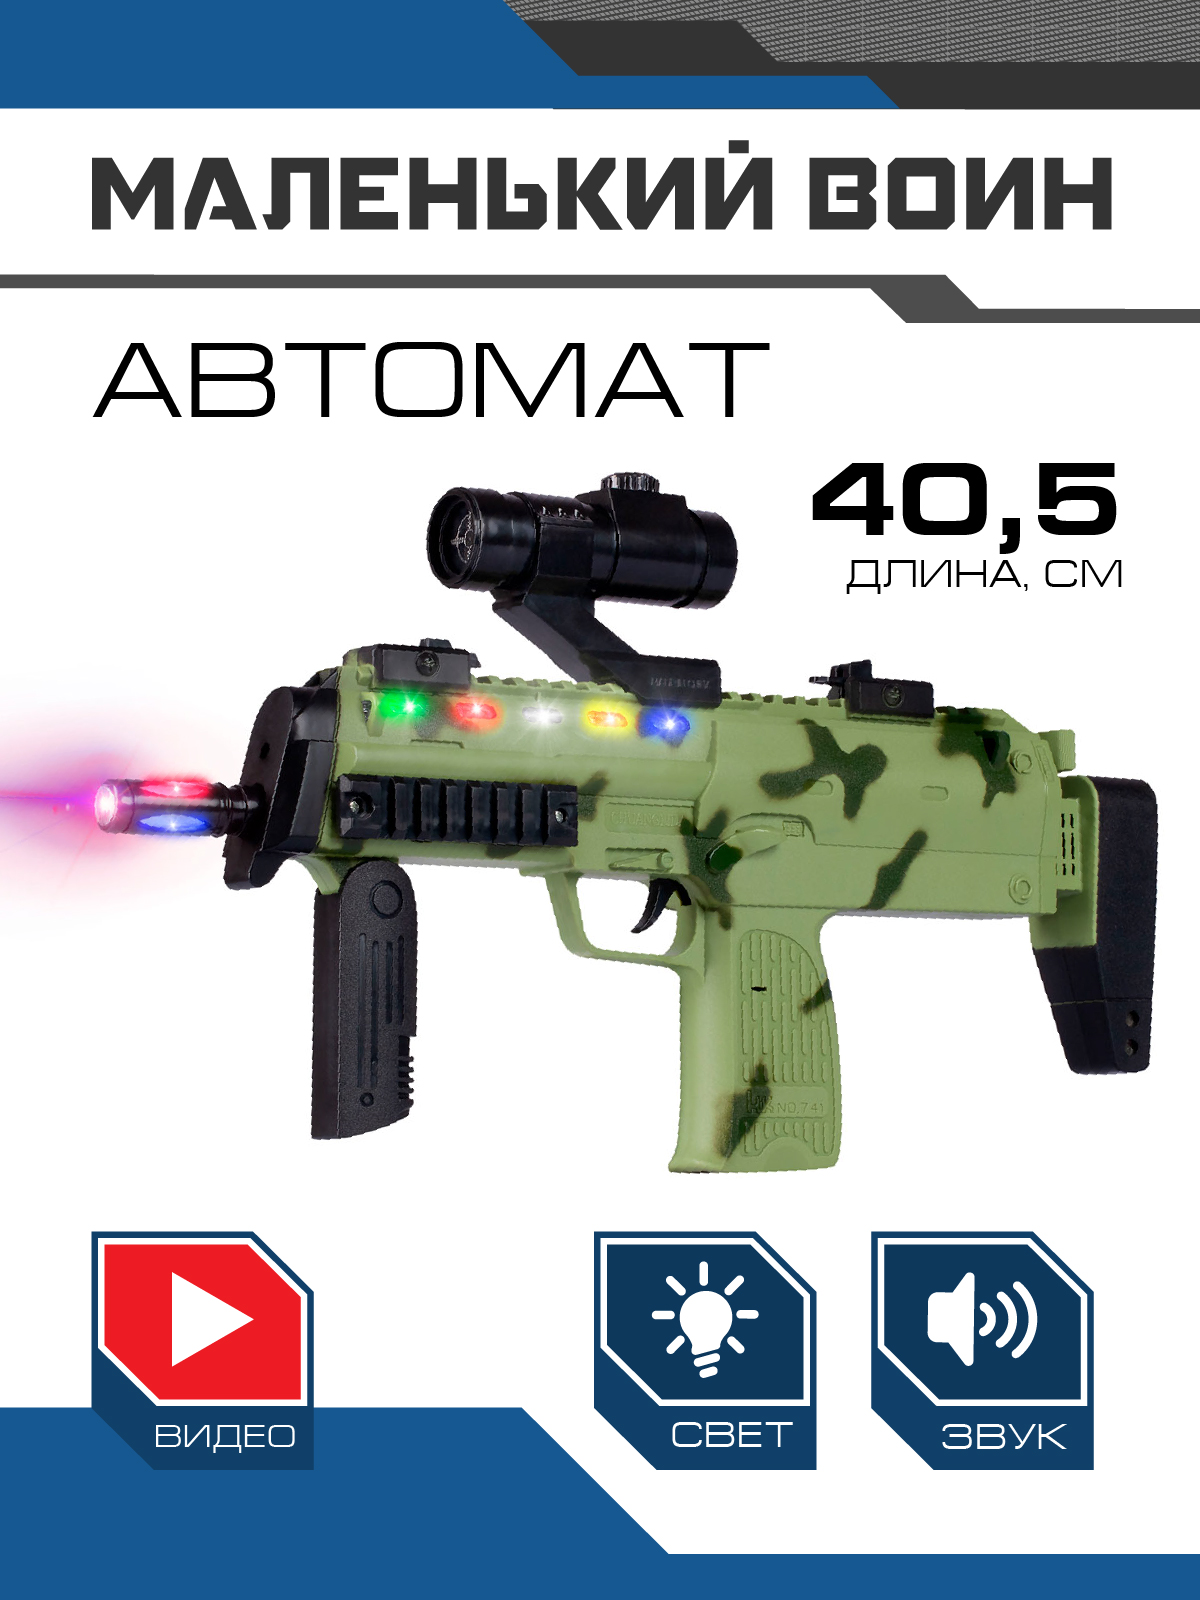 Детское игрушечное оружие автомат ТМ Маленький воин, свет/звук/вибрация, JB0211624